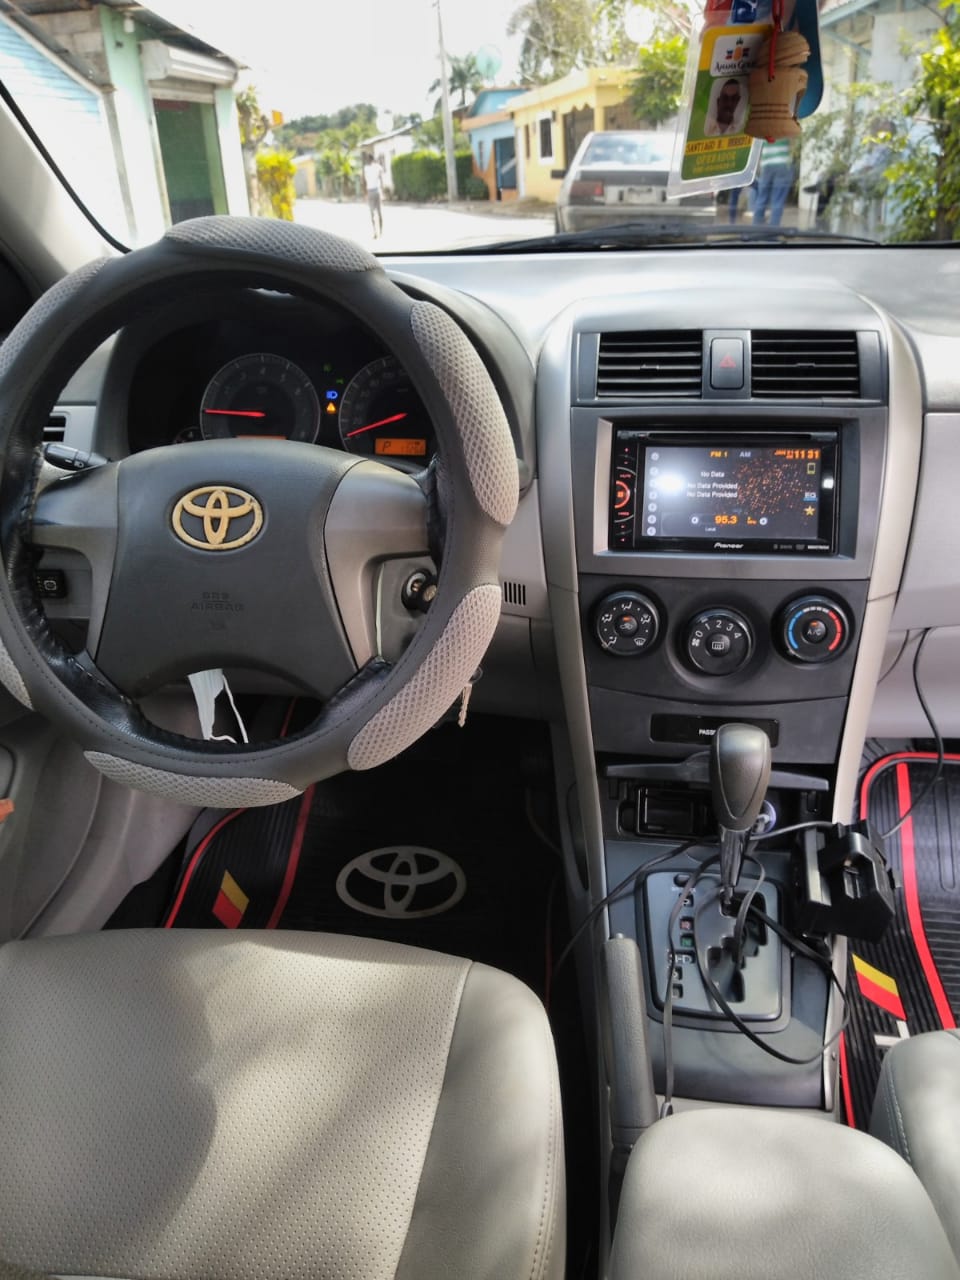 carros - Toyota Corolla  Americano XLI,  condiciones de Nuevo